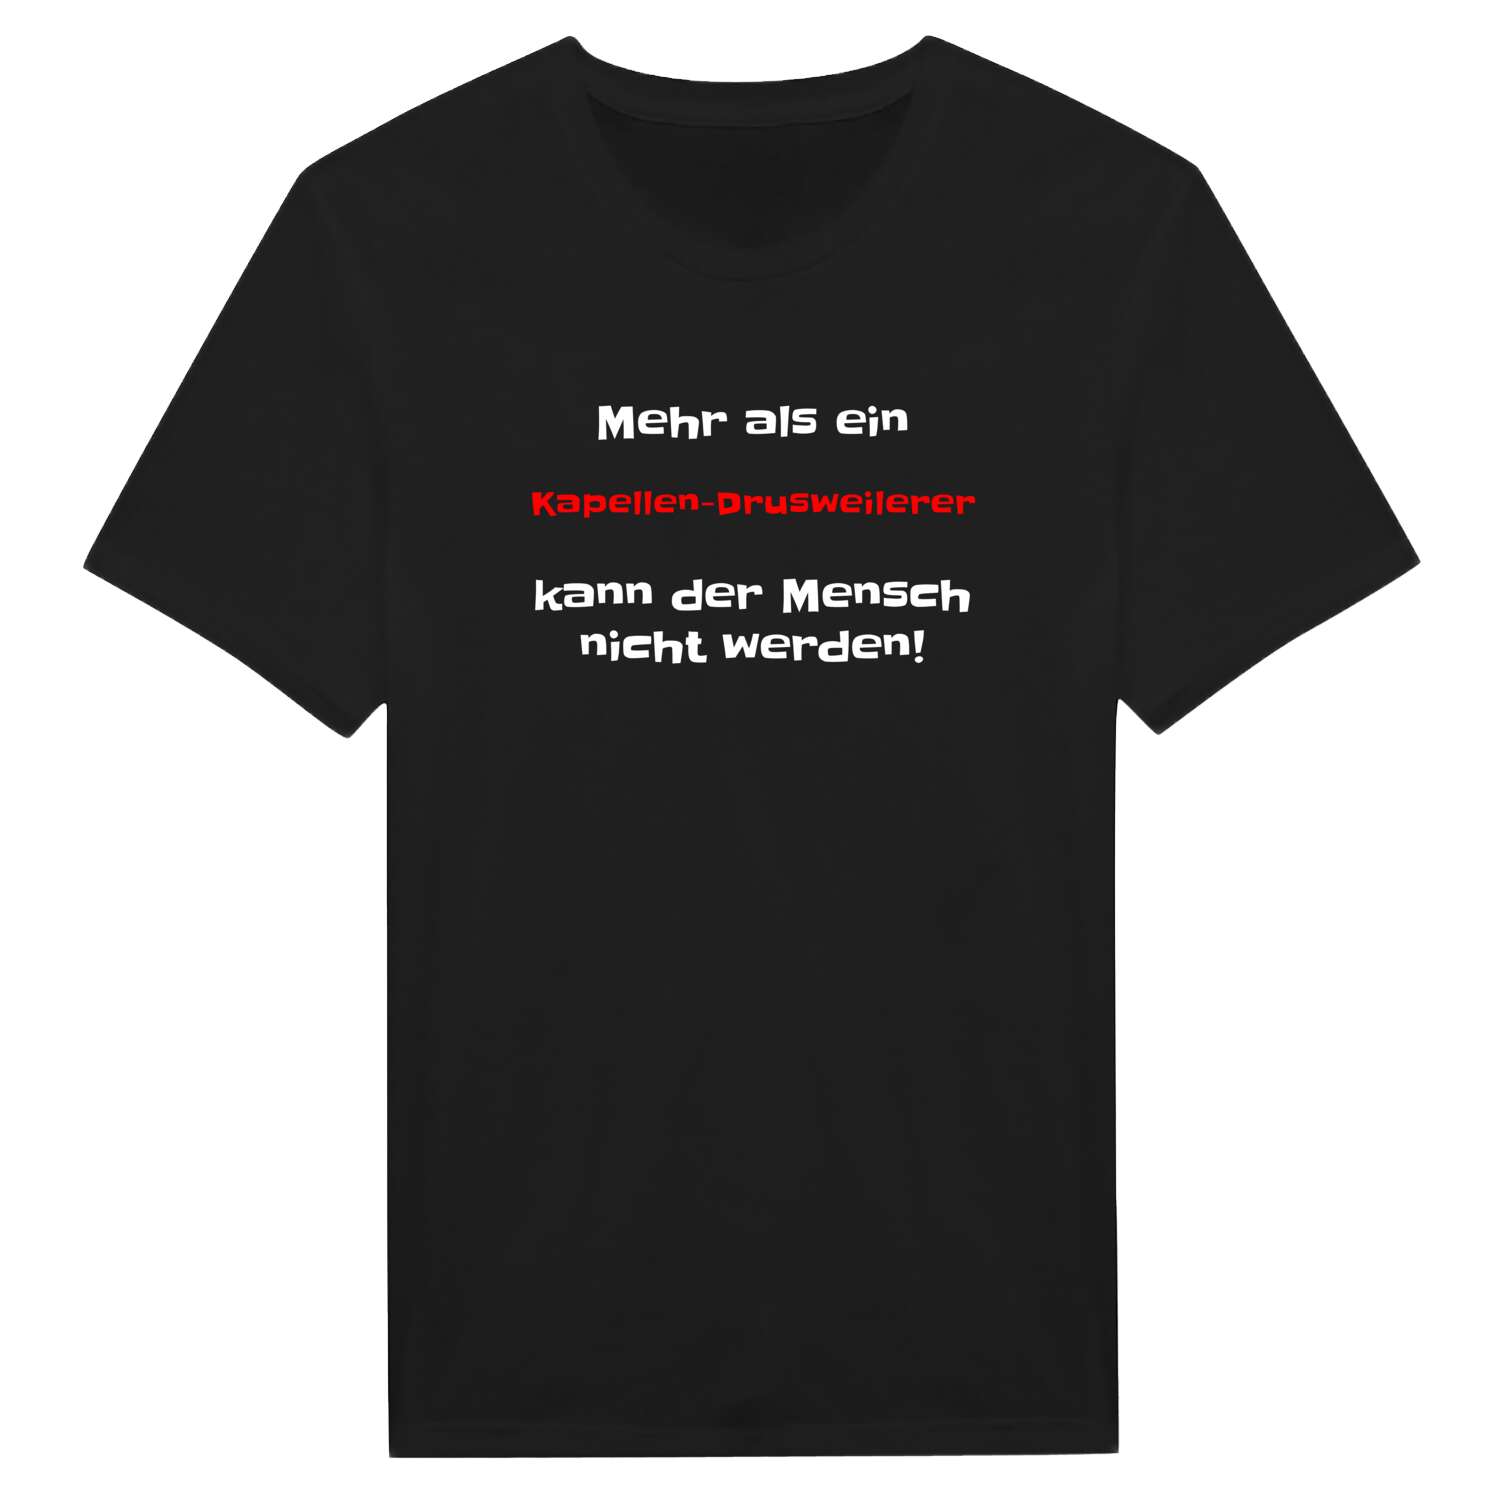 Kapellen-Drusweiler T-Shirt »Mehr als ein«